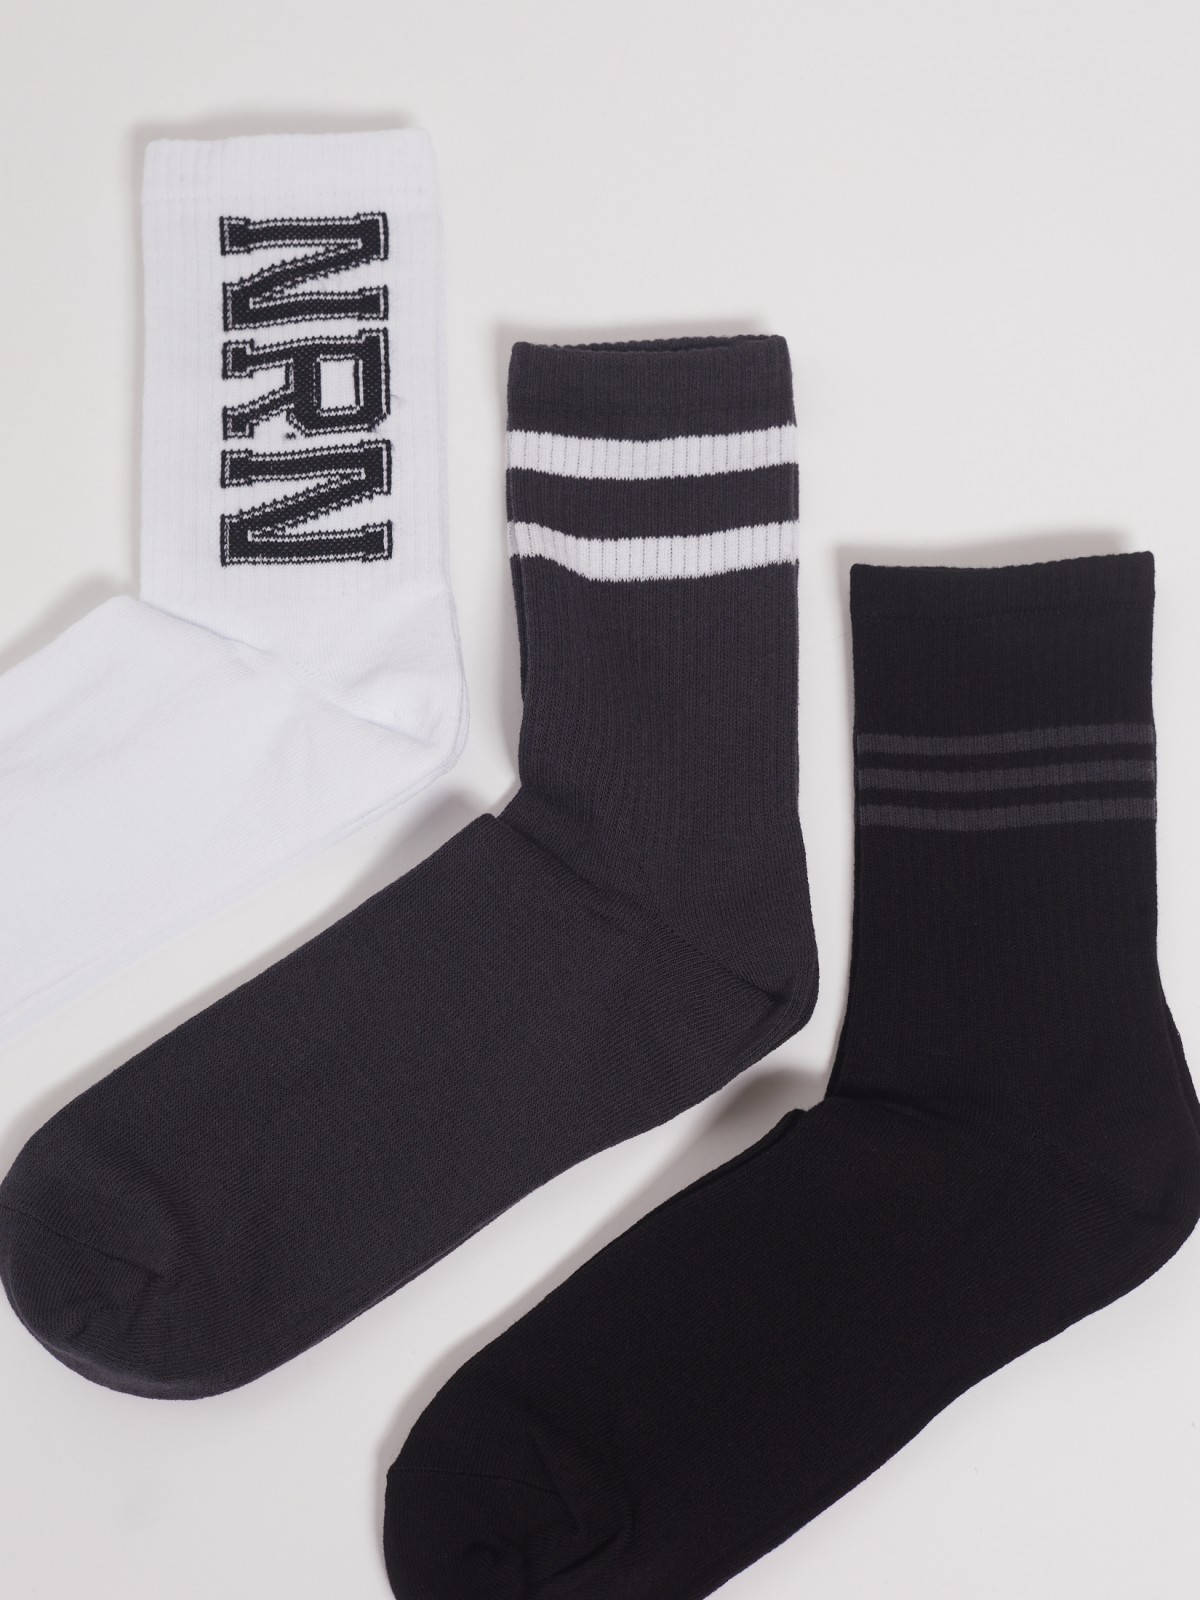 Набор высоких носков (3 пары в комплекте) zolla 01311998J185, цвет черный, размер 25-27 - фото 2